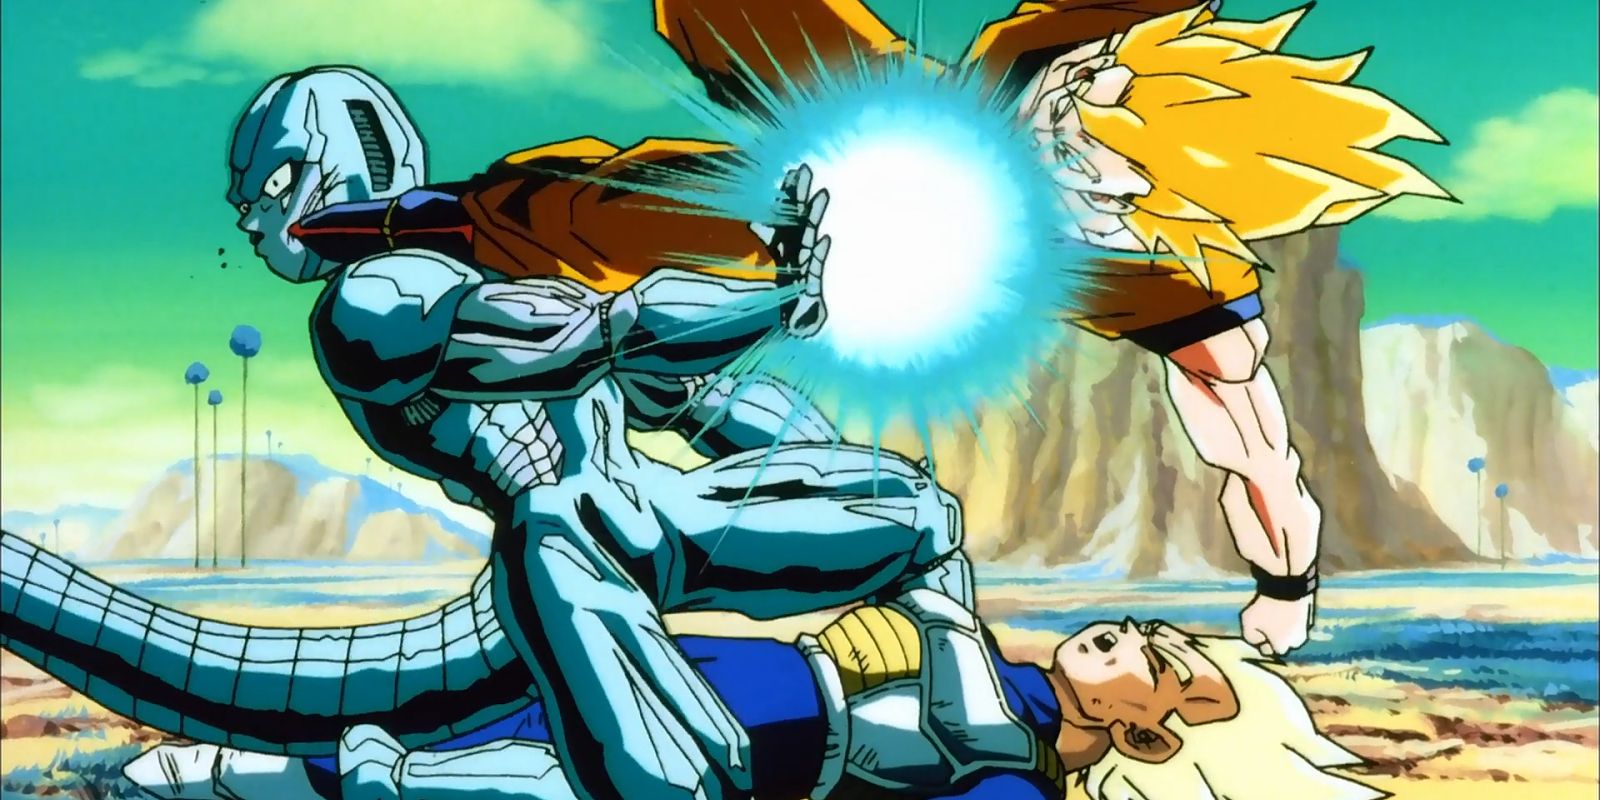 Super Saiyan Goku chuta Metal Cooler em Dragon Ball Z.